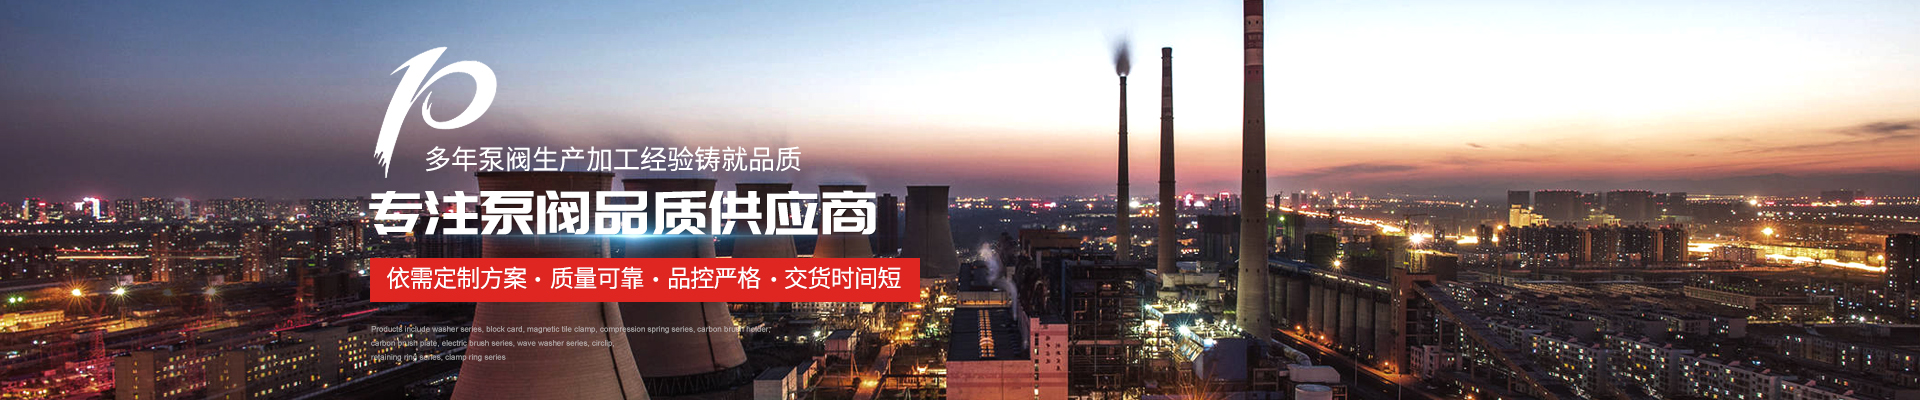 星三角3FC控制柜廠家價格實惠 - 上海高適泵閥有限公司